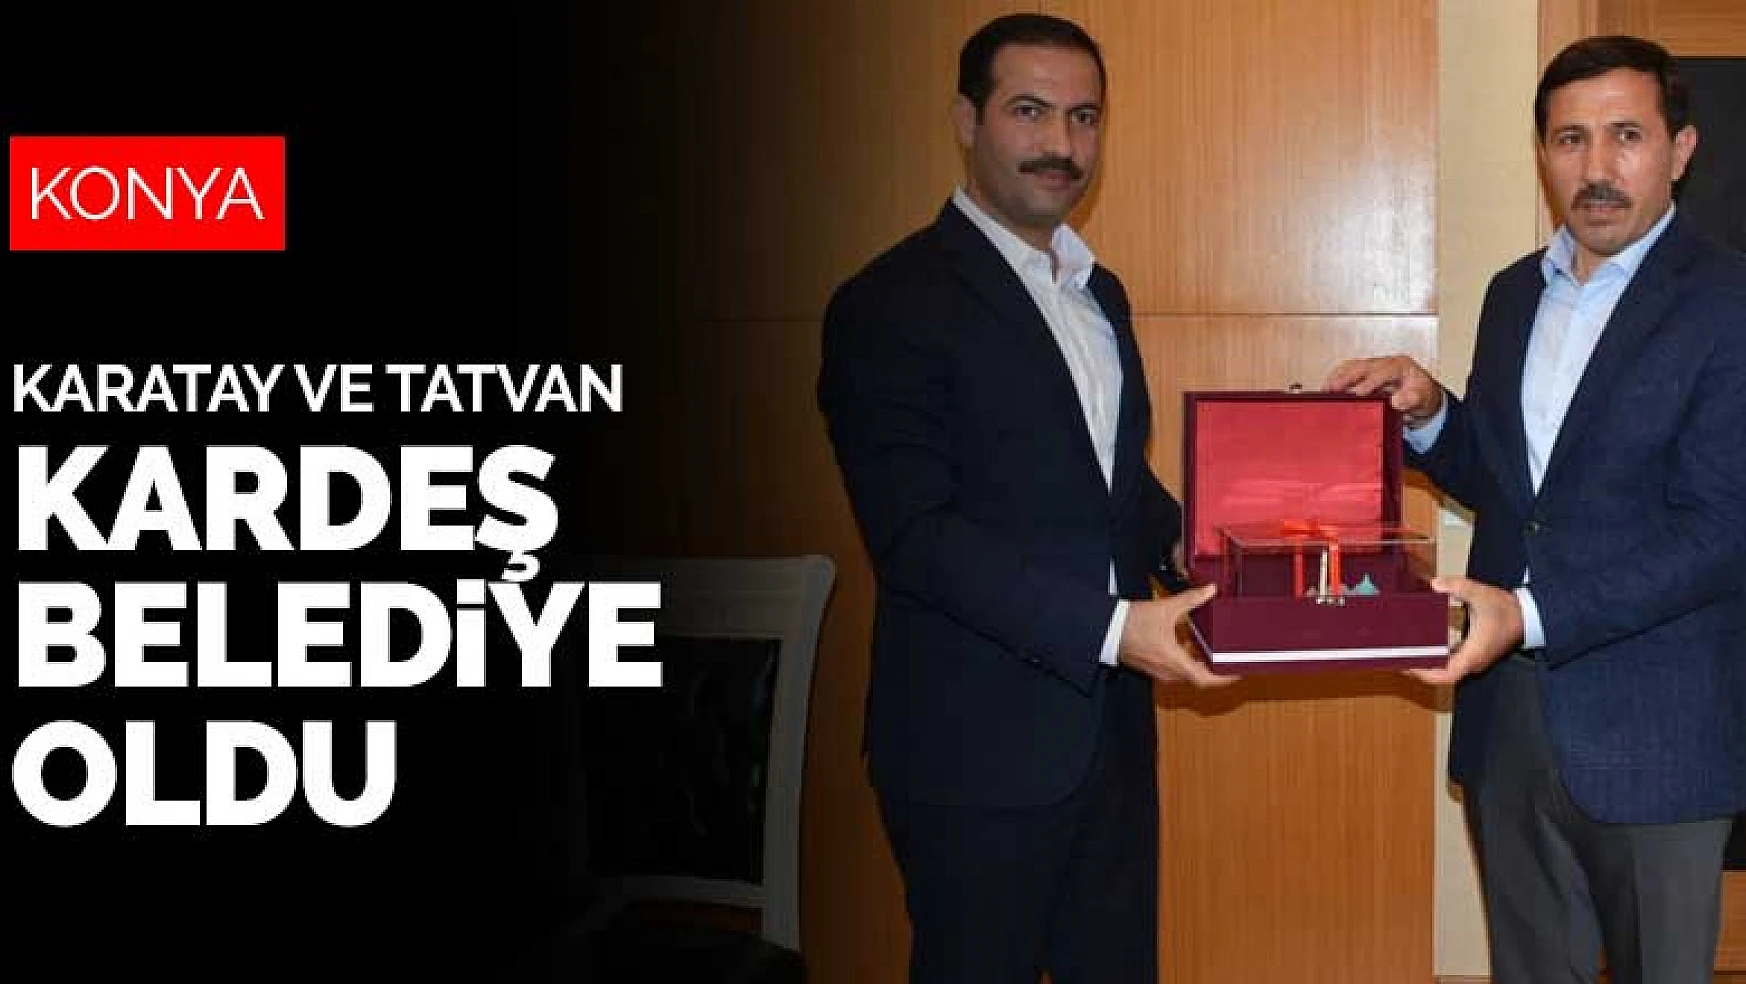 Konya Karatay ile Bitlis Tatvan kardeş belediye oldu